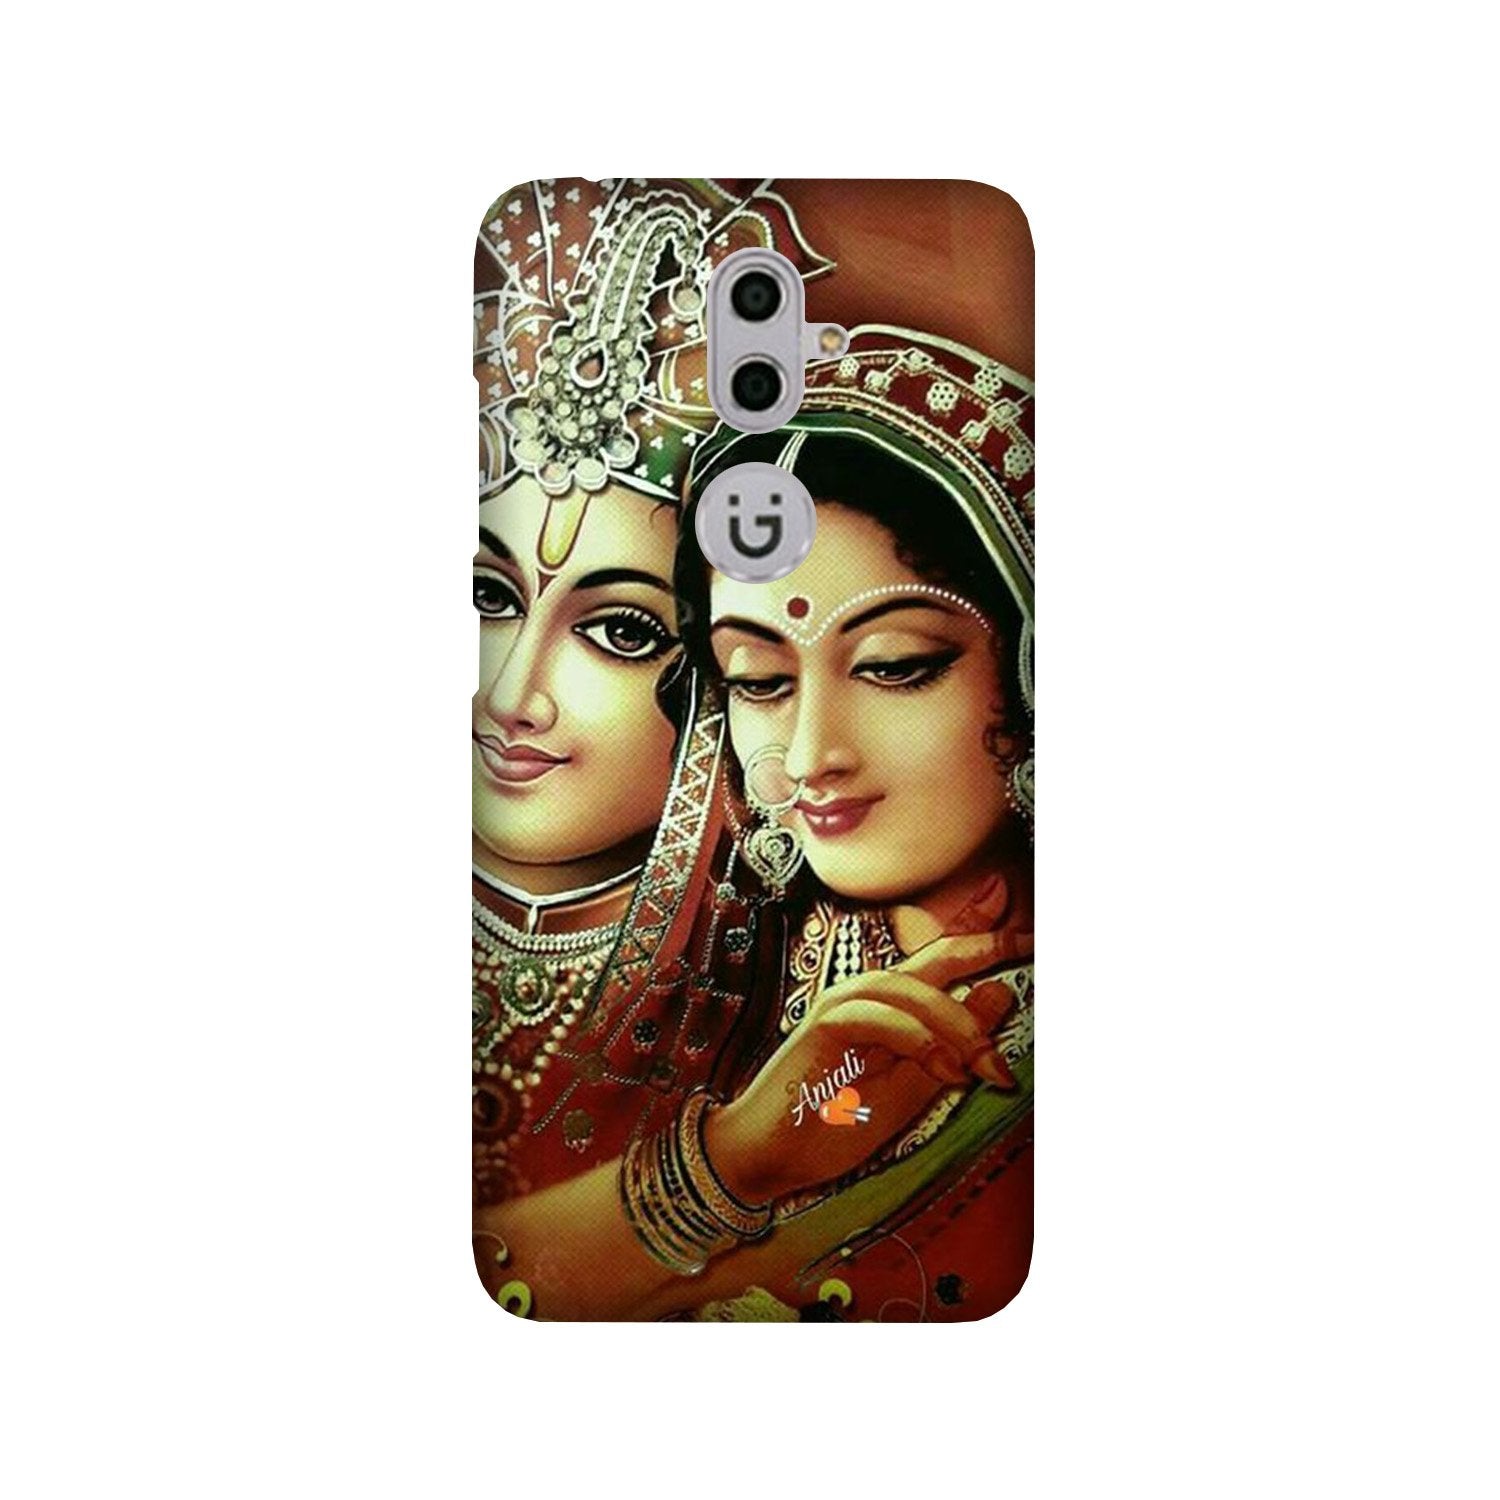 Radha Krishna Case for Gionee S9 (Design No. 289)